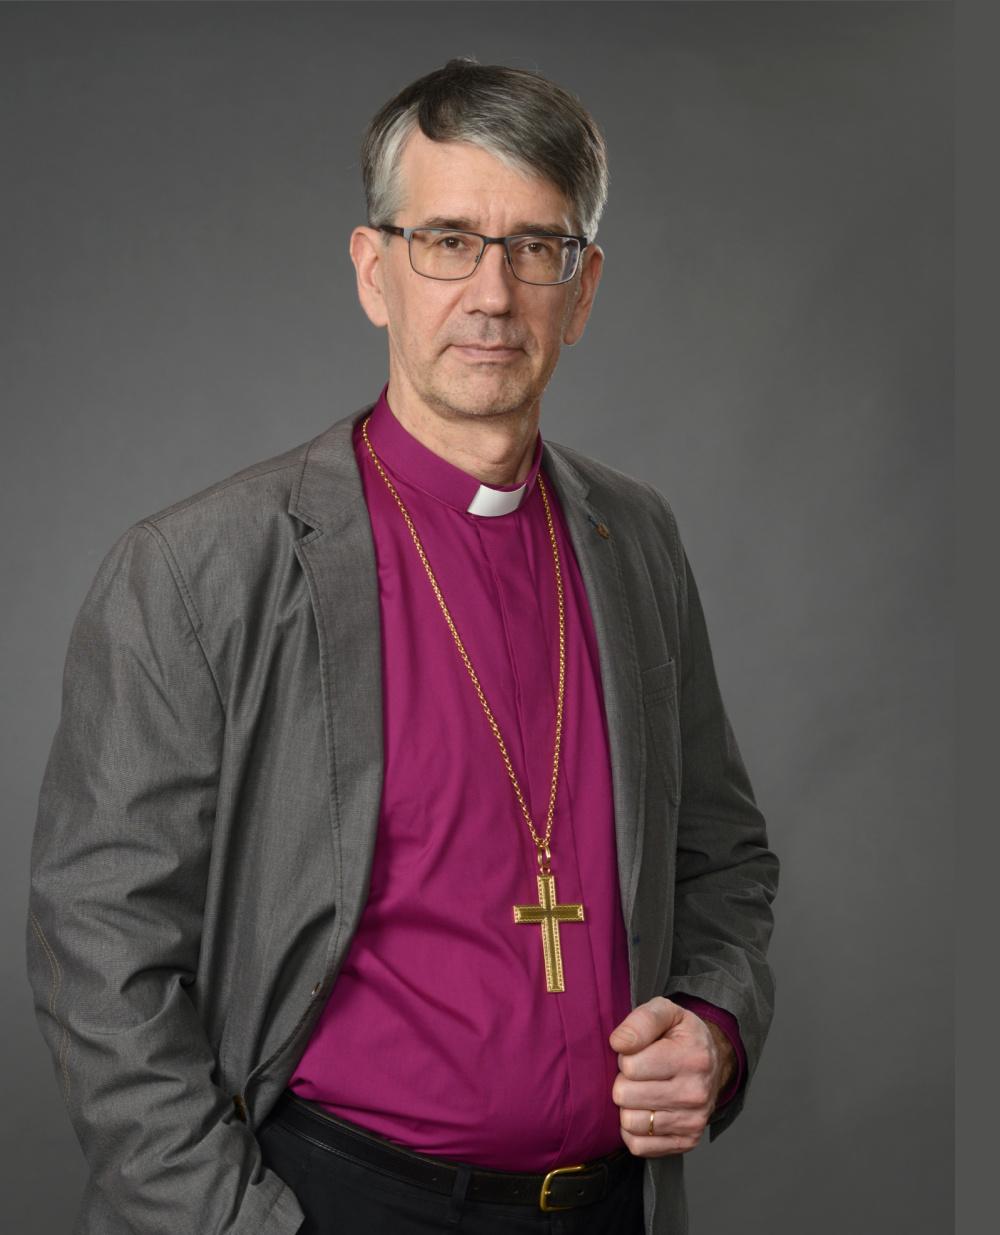 Piispa Matti Salomäki